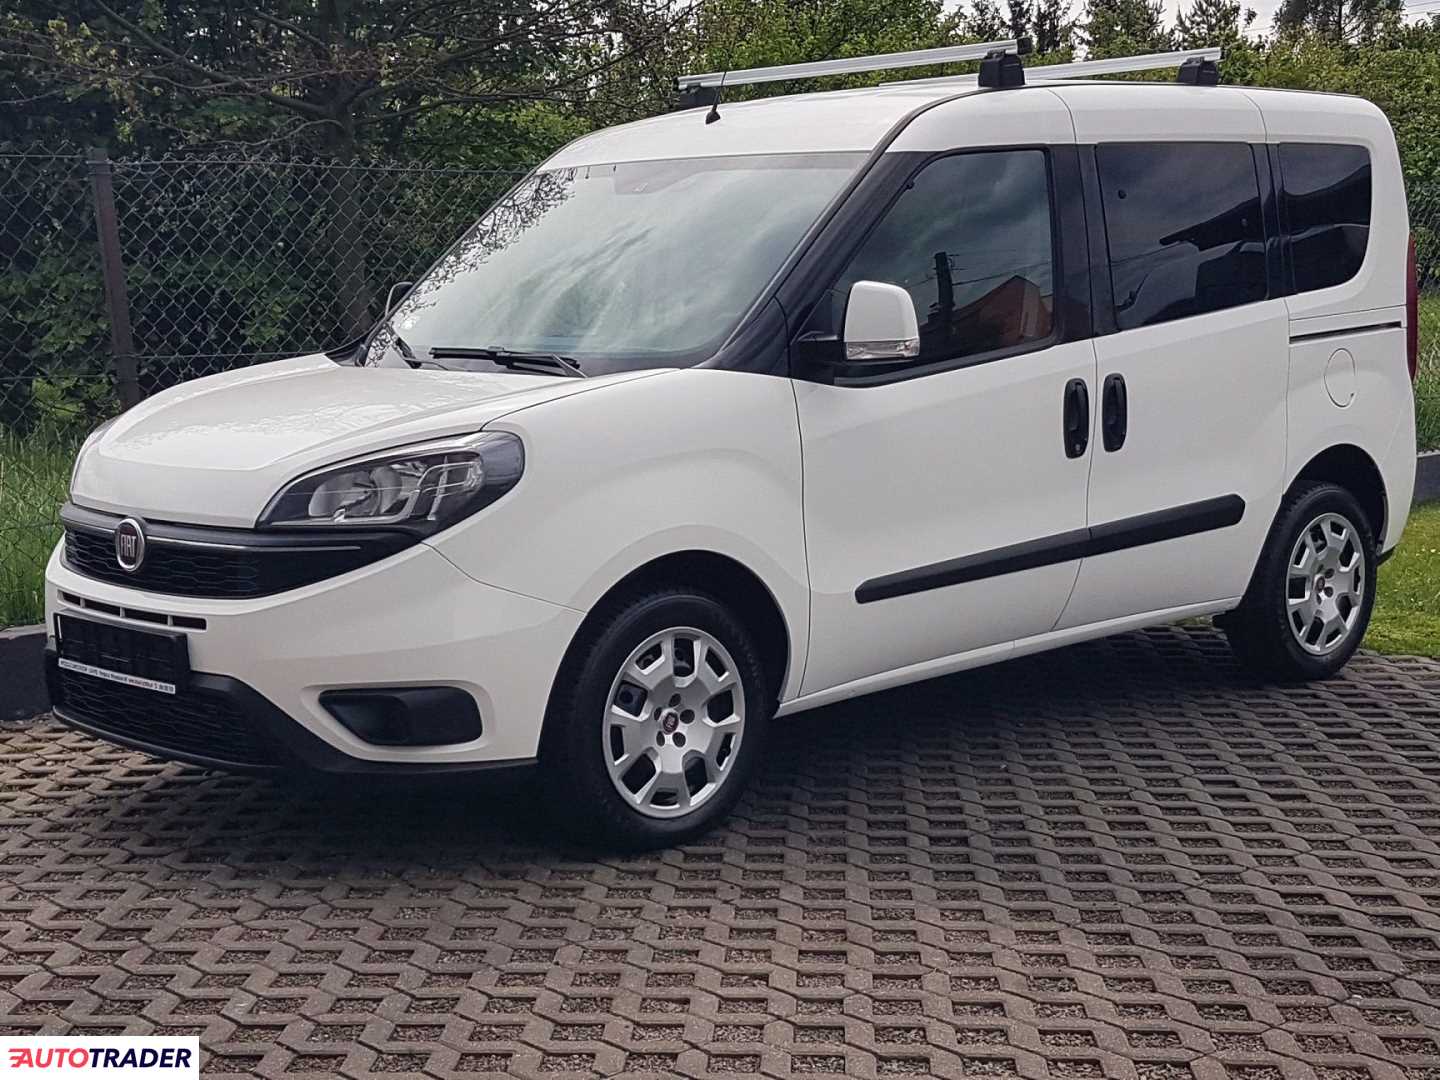 Fiat Doblo 2020 1.6 105 KM